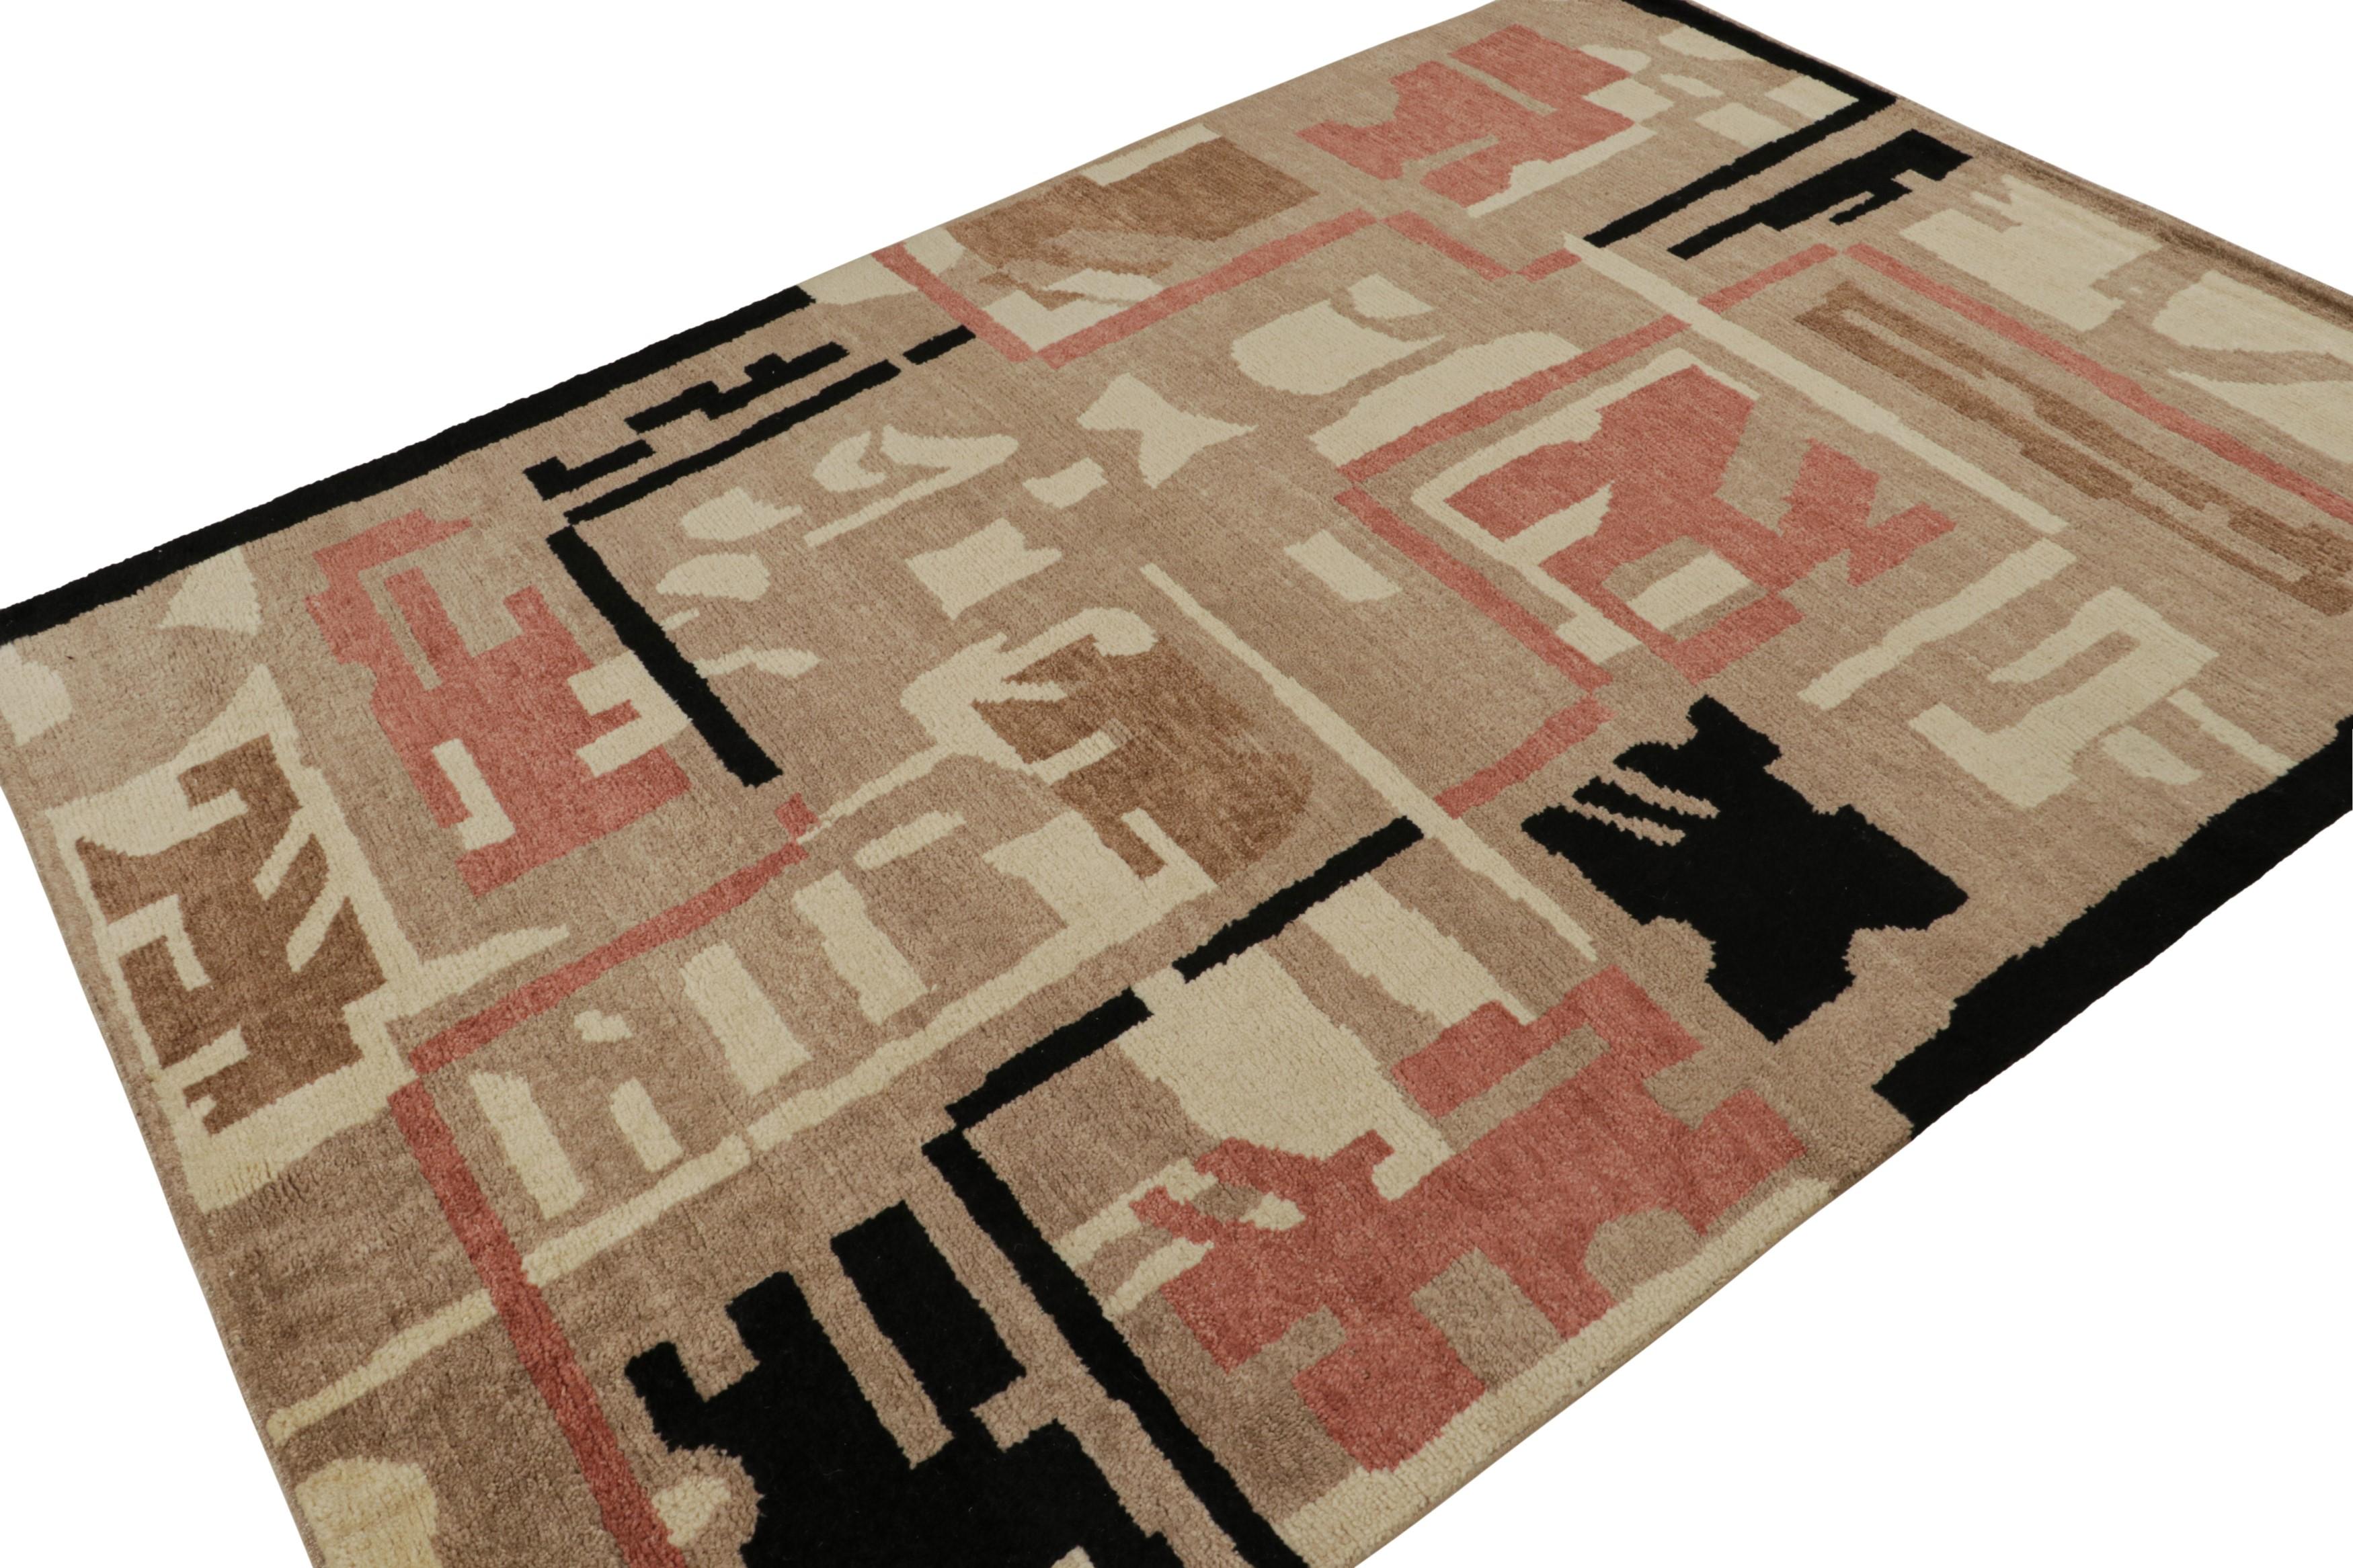 Ce 6x8, ode aux tapis Art déco français, est le prochain ajout à la nouvelle collection Deco de Rug & Kilim. Noué à la main en laine.

Plus loin dans le Design :  

Cette pièce arbore le style déco des années 1920 avec des motifs géométriques en